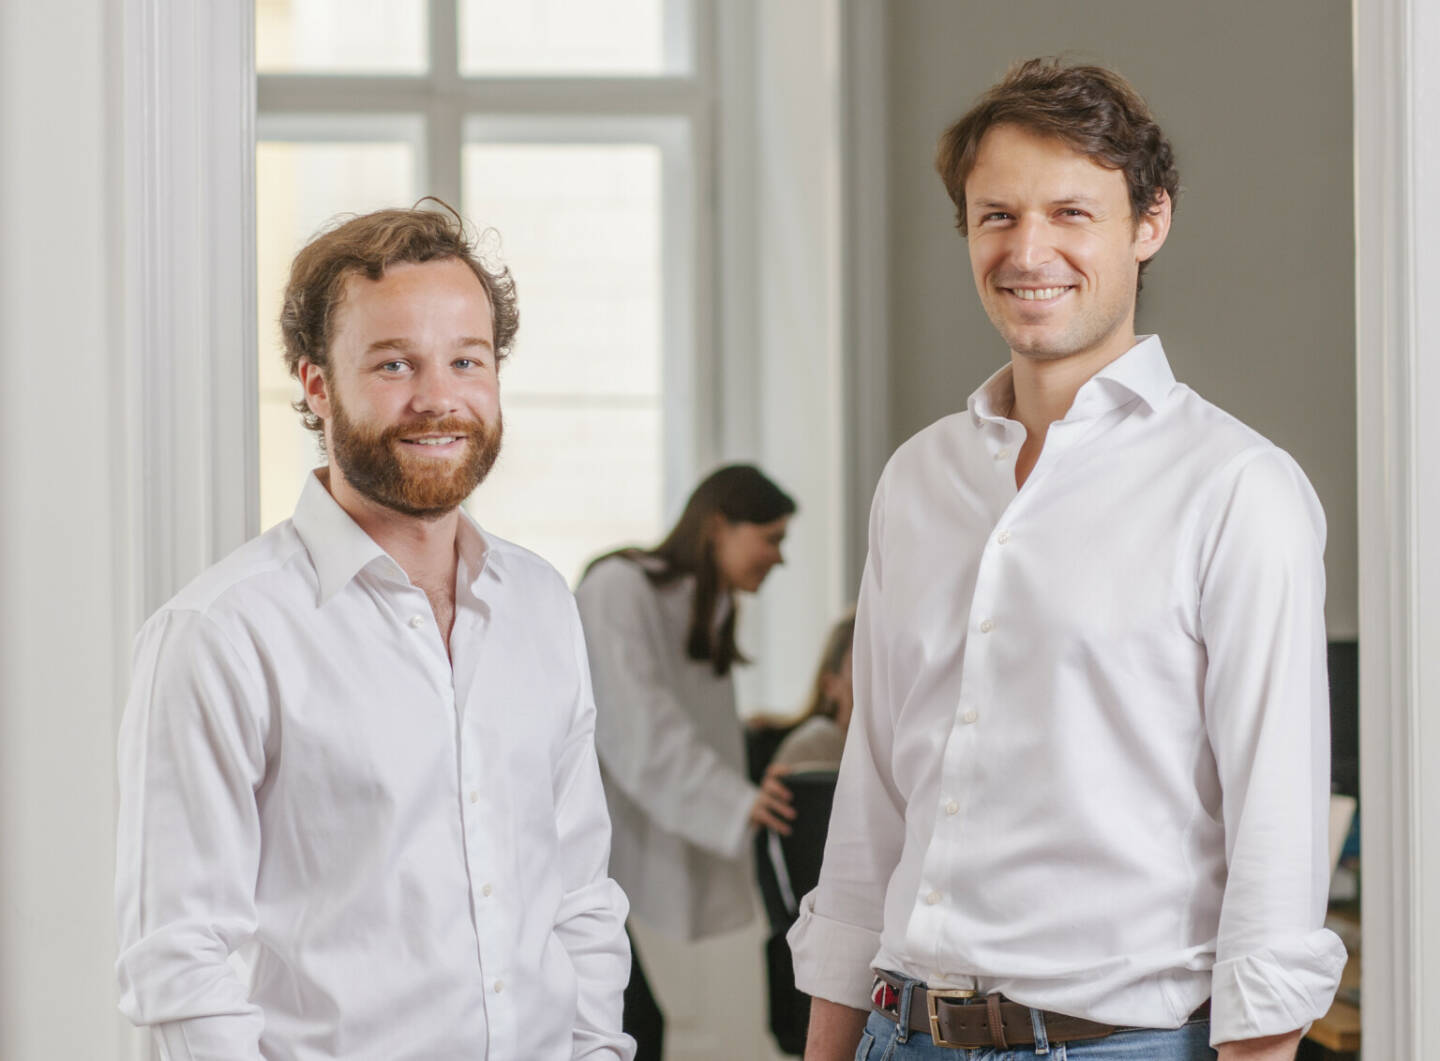 Österreichisches Investment-Start-up Froots sichert sich Kapitalerhöhung in Millionenhöhe;  Personen:David Mayer-Heinisch und Dirk van Wassenae; Credit: Froots